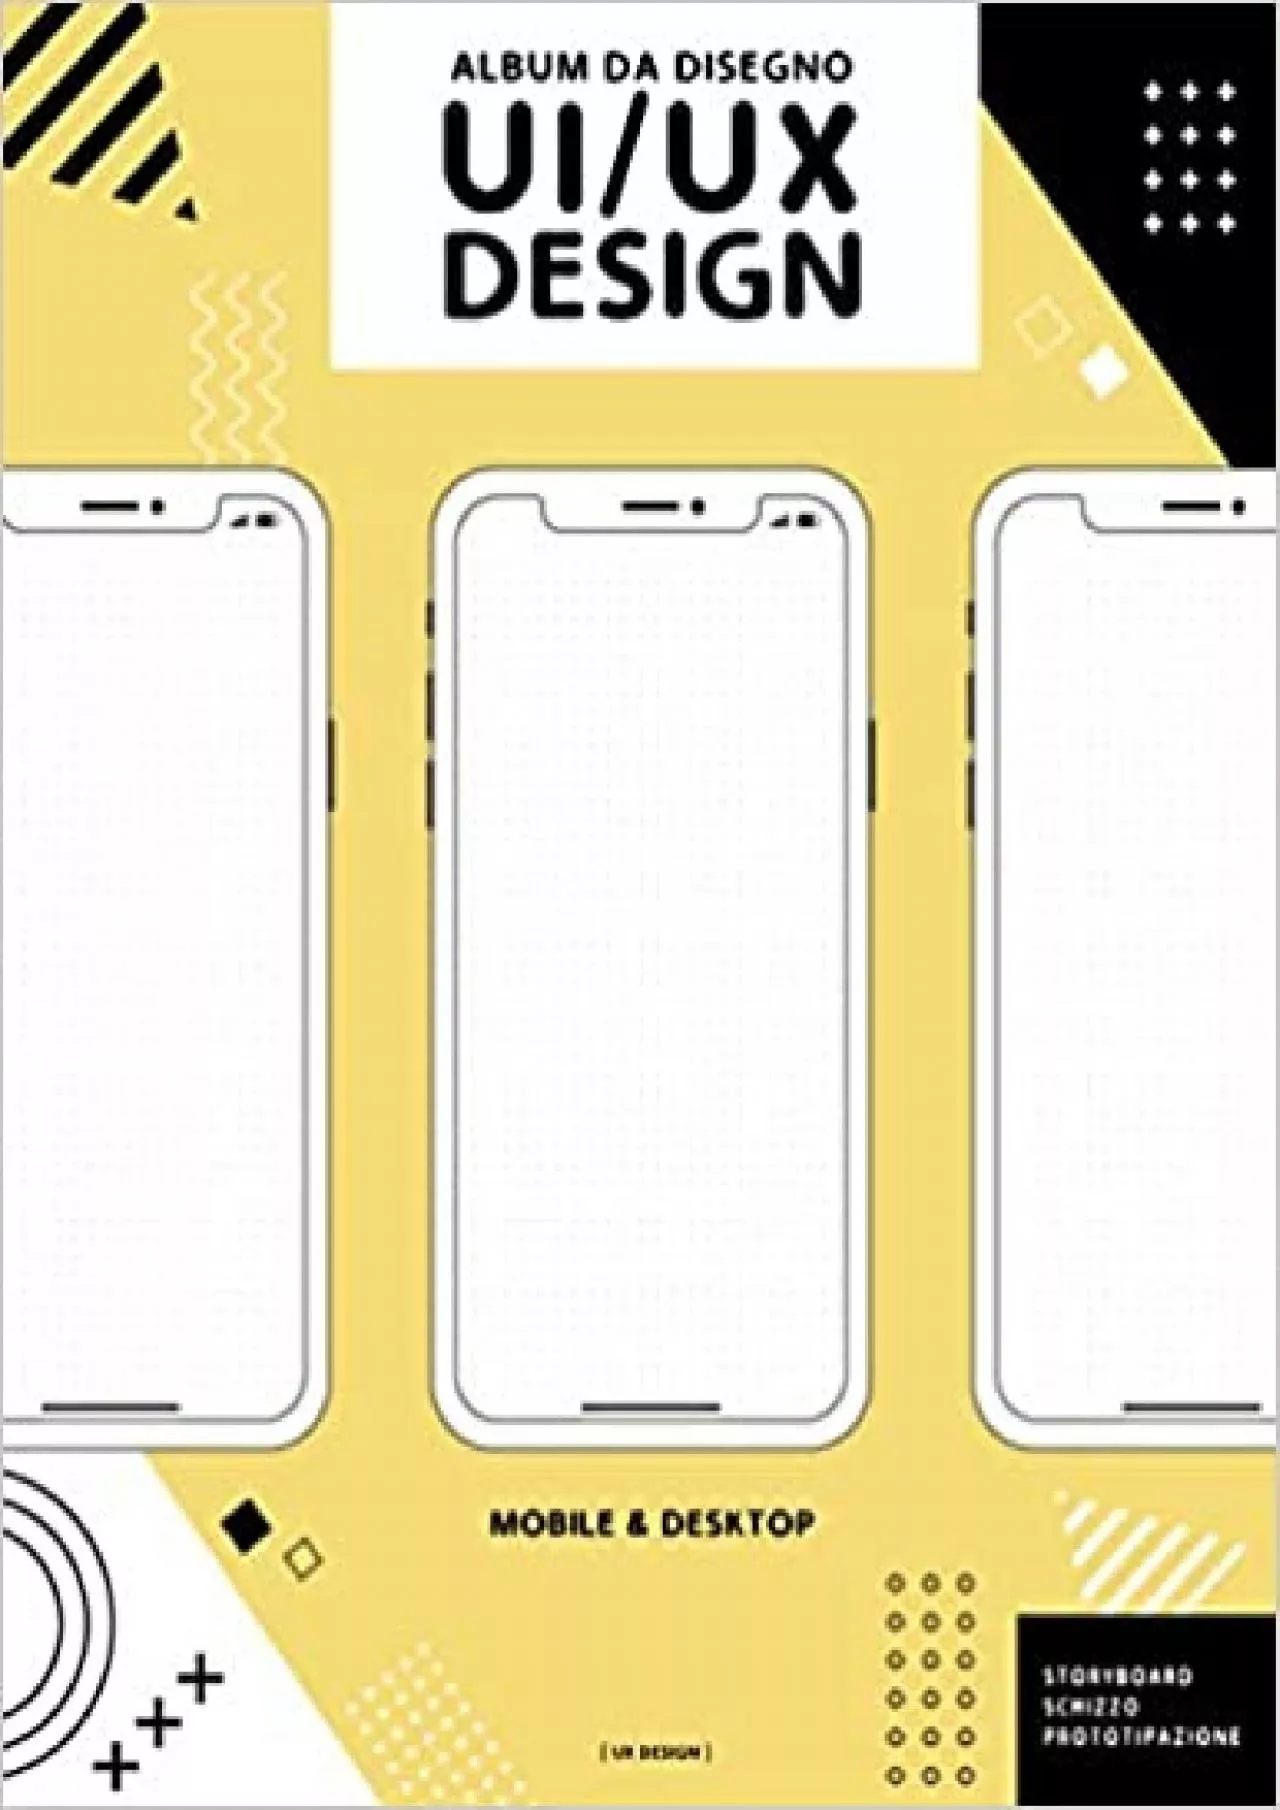 (READ)-Album da disegno UI UX Design Taccuino per prototipi di interfacce professionali